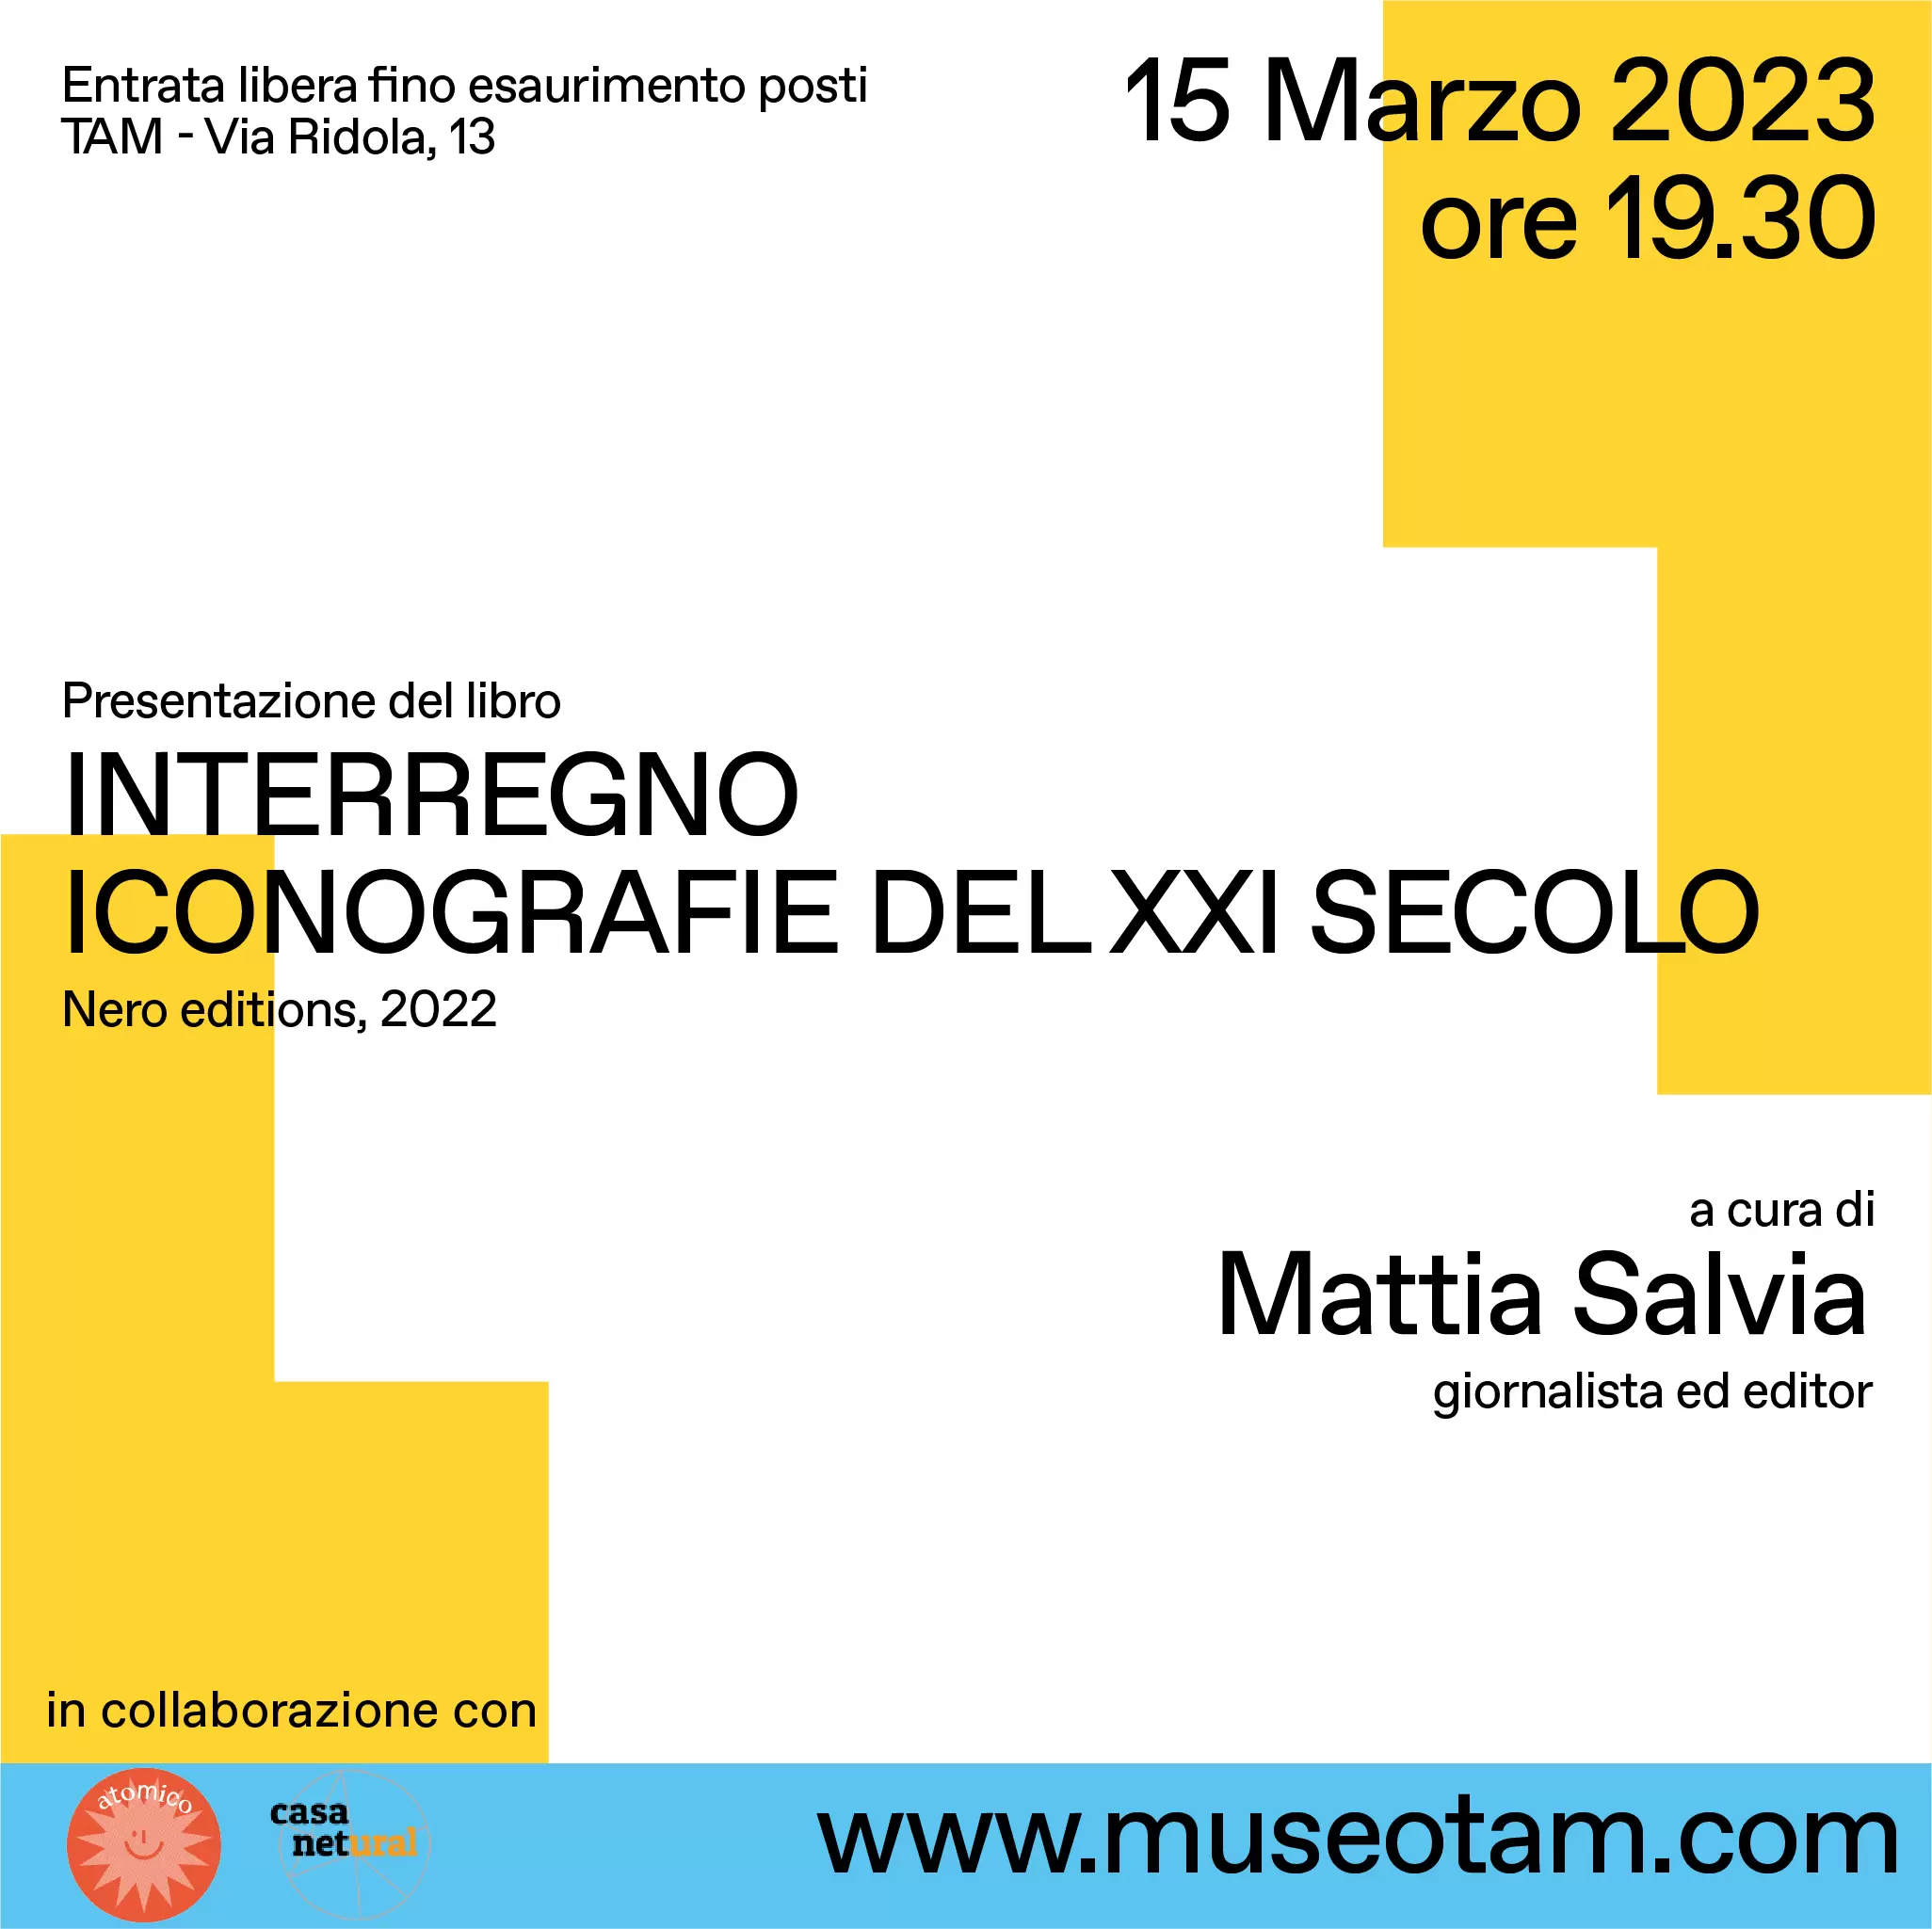 Presentazione del libro "Interregno. Iconografie del XXI secolo" al TAM